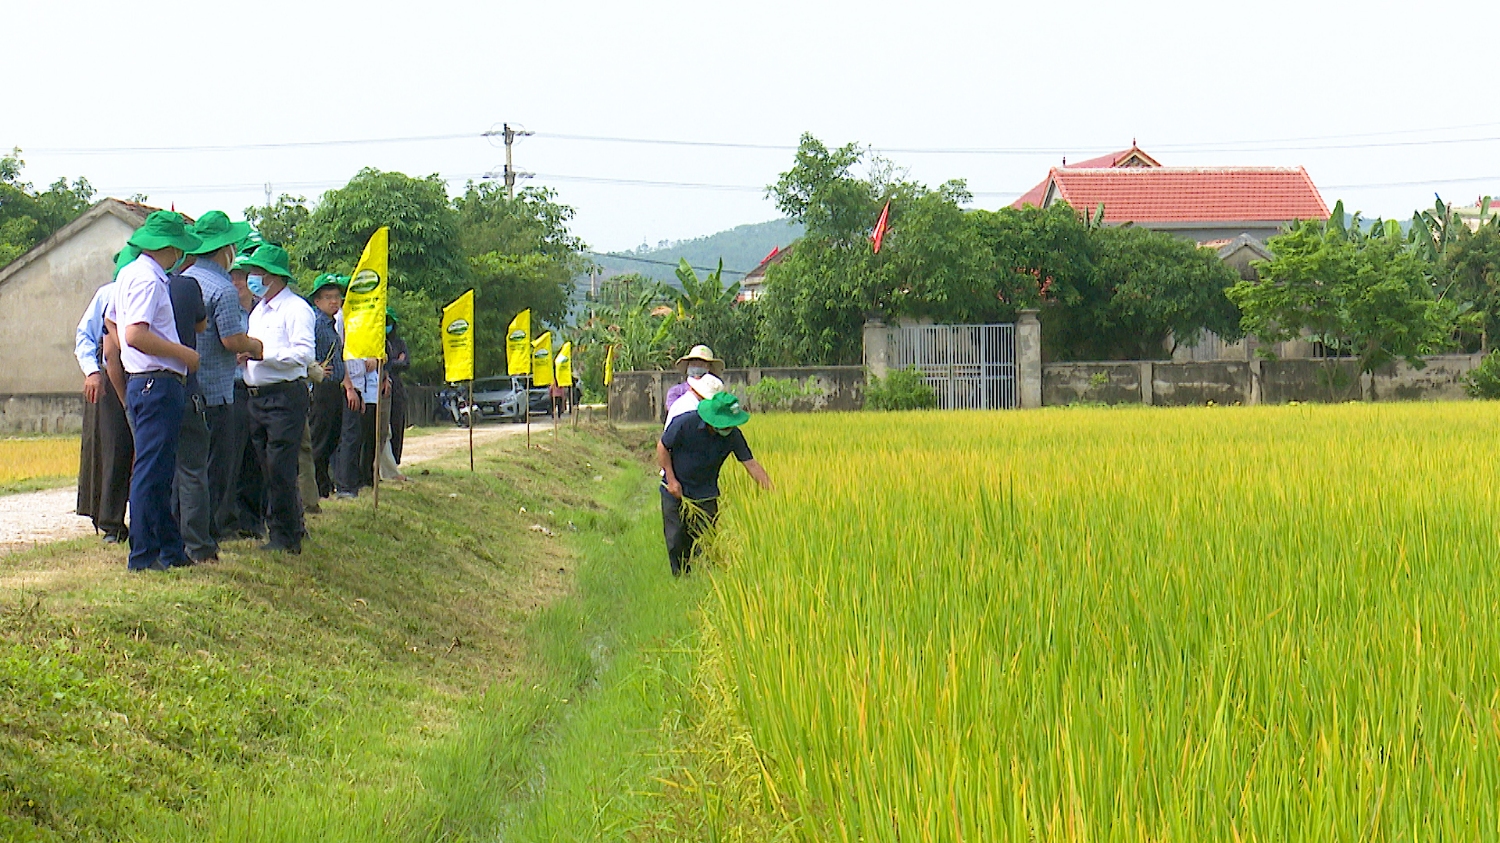 Mô hình liên kết sản xuất lúa theo chuỗi được thực hiện tại thôn Tiên Phan thành công với giống lúa ST25